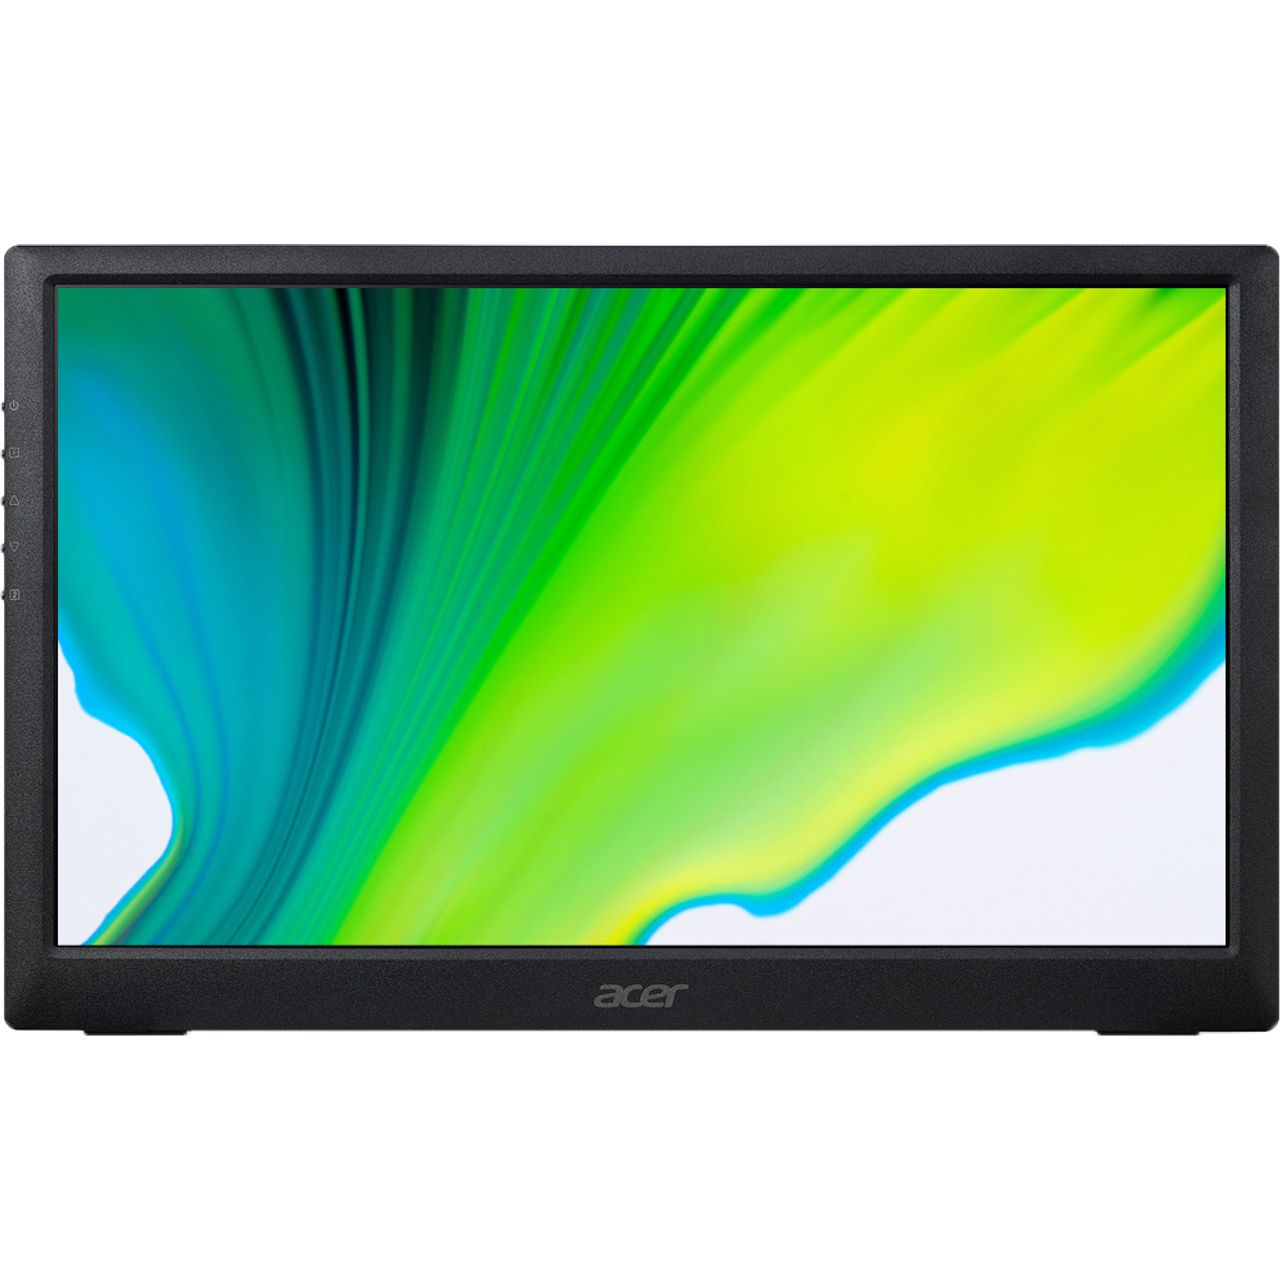 Acer PM161Qbu Full HD 15.6